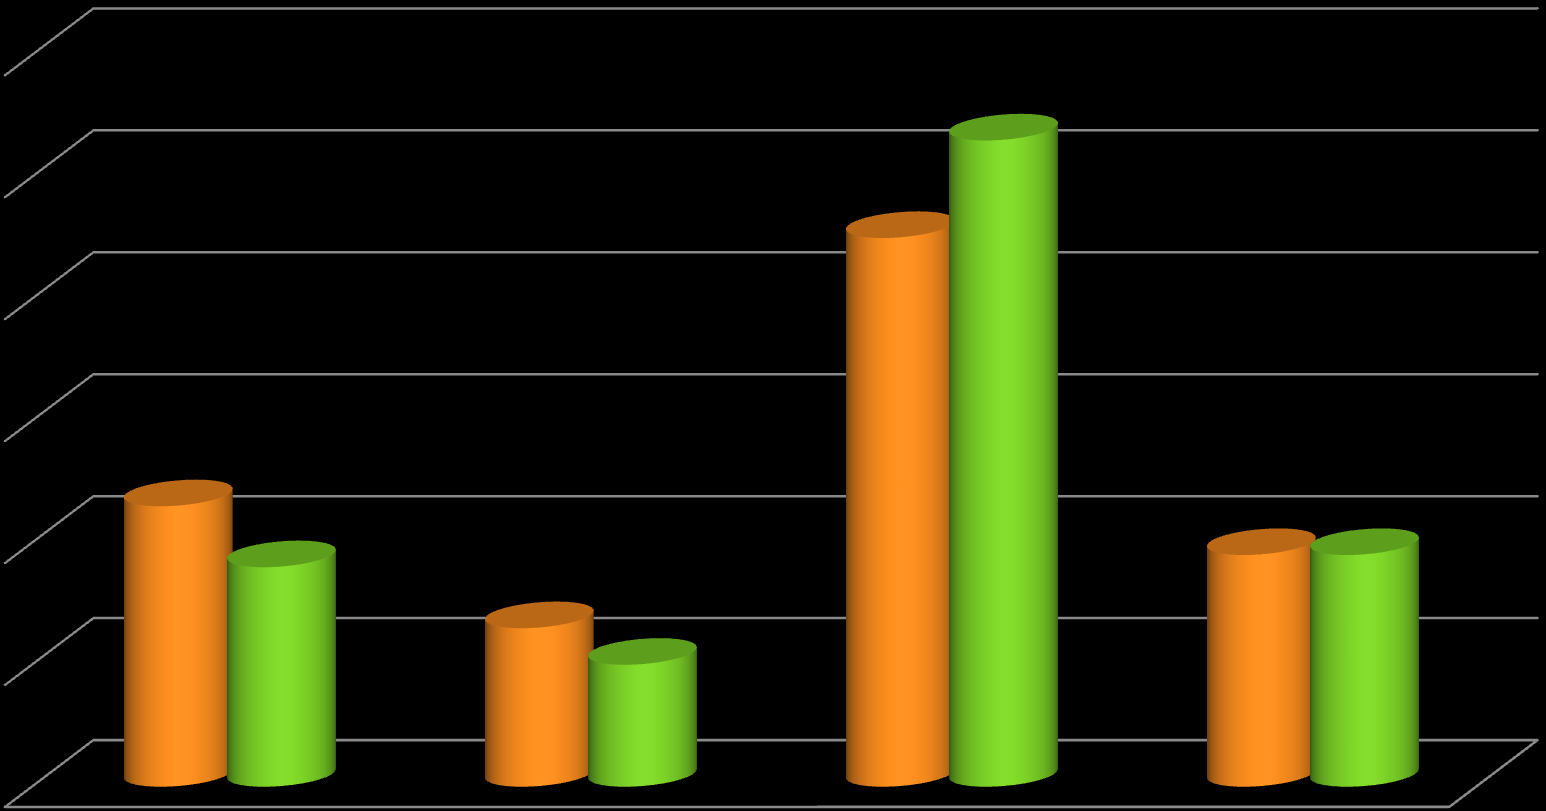 Gestão de RH Dificuldades enfrentadas para execução dos projetos em RH 2013 2012 53% 45%